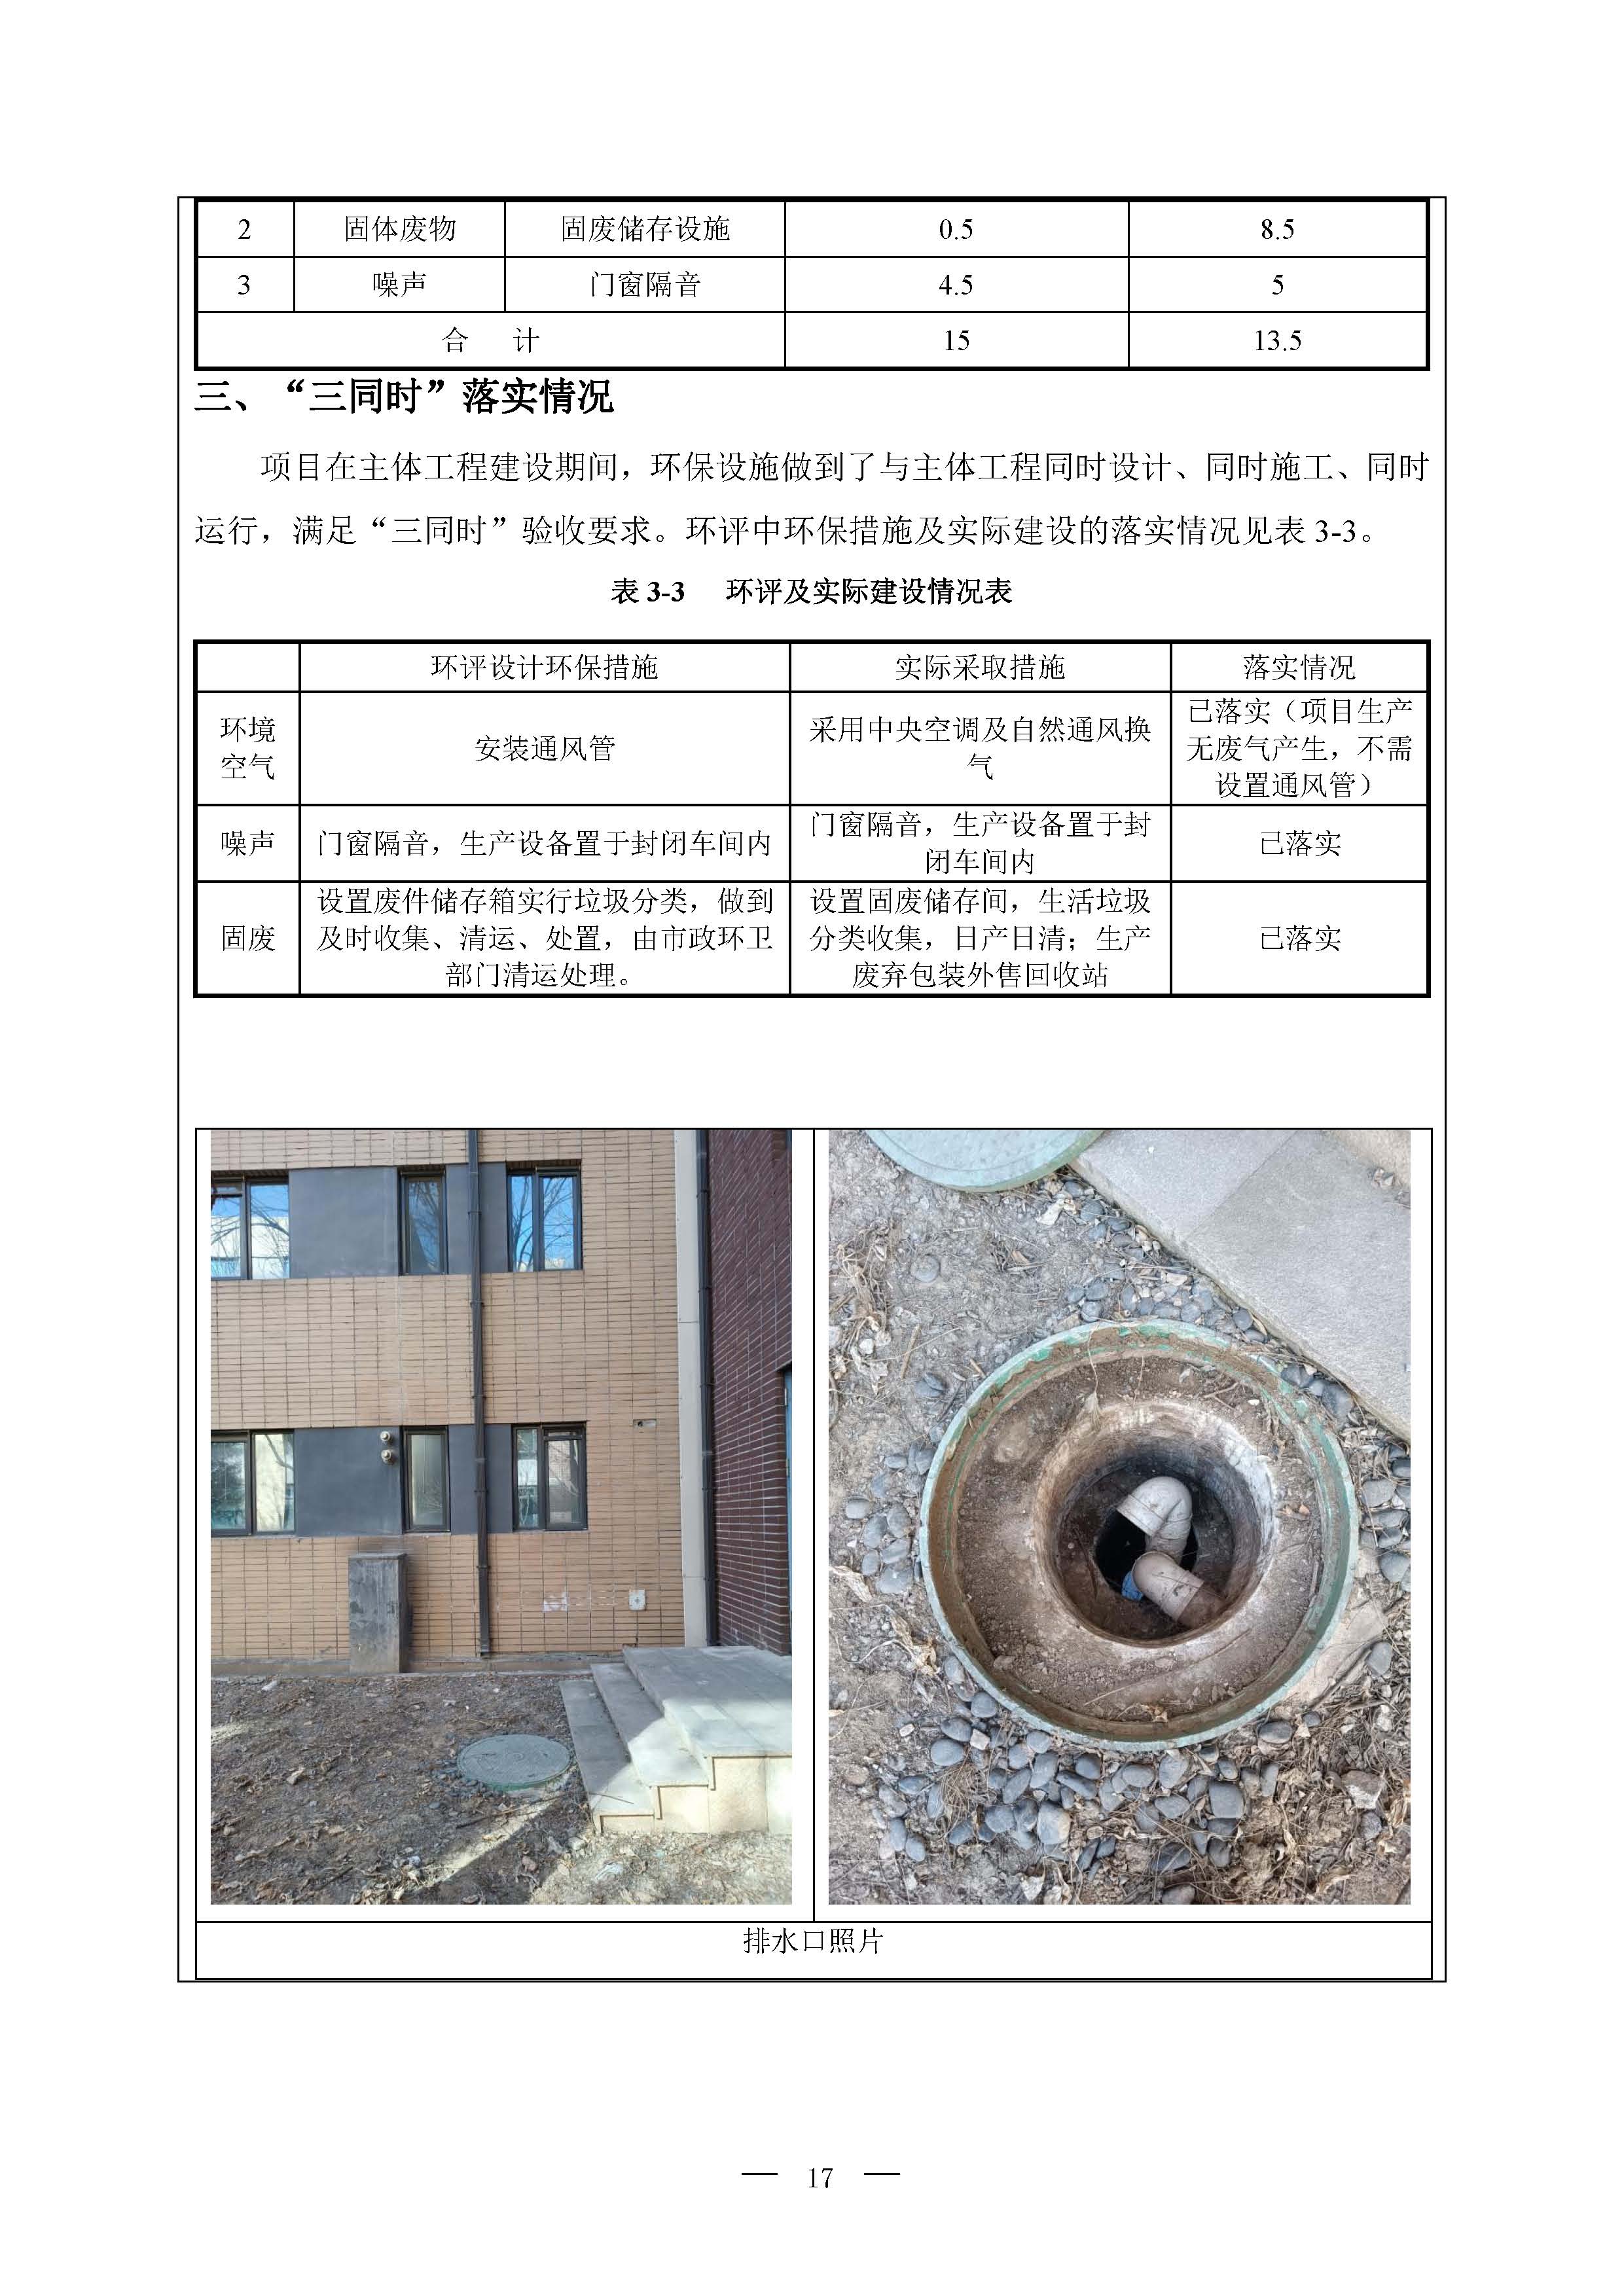 北京博瑞莱智能科技集团有限公司项目竣工环境保护验收监测报告全本公示(图21)